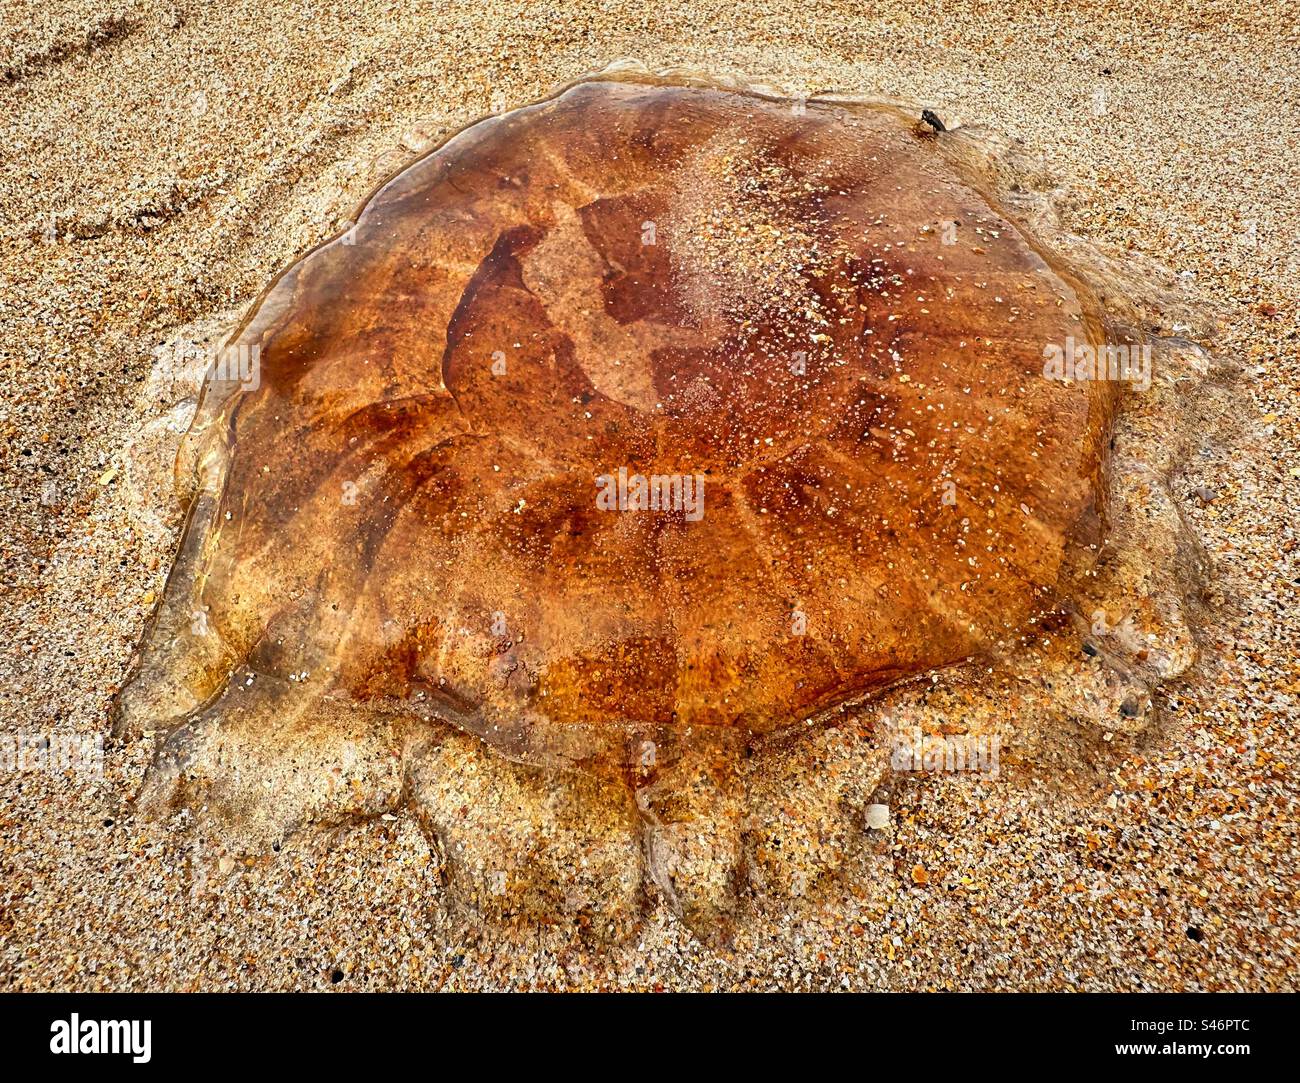 Une méduse Lion’s Mane, échouée sur le rivage d’une plage de Northumberland. Nom scientifique Cyanea capillata. Banque D'Images